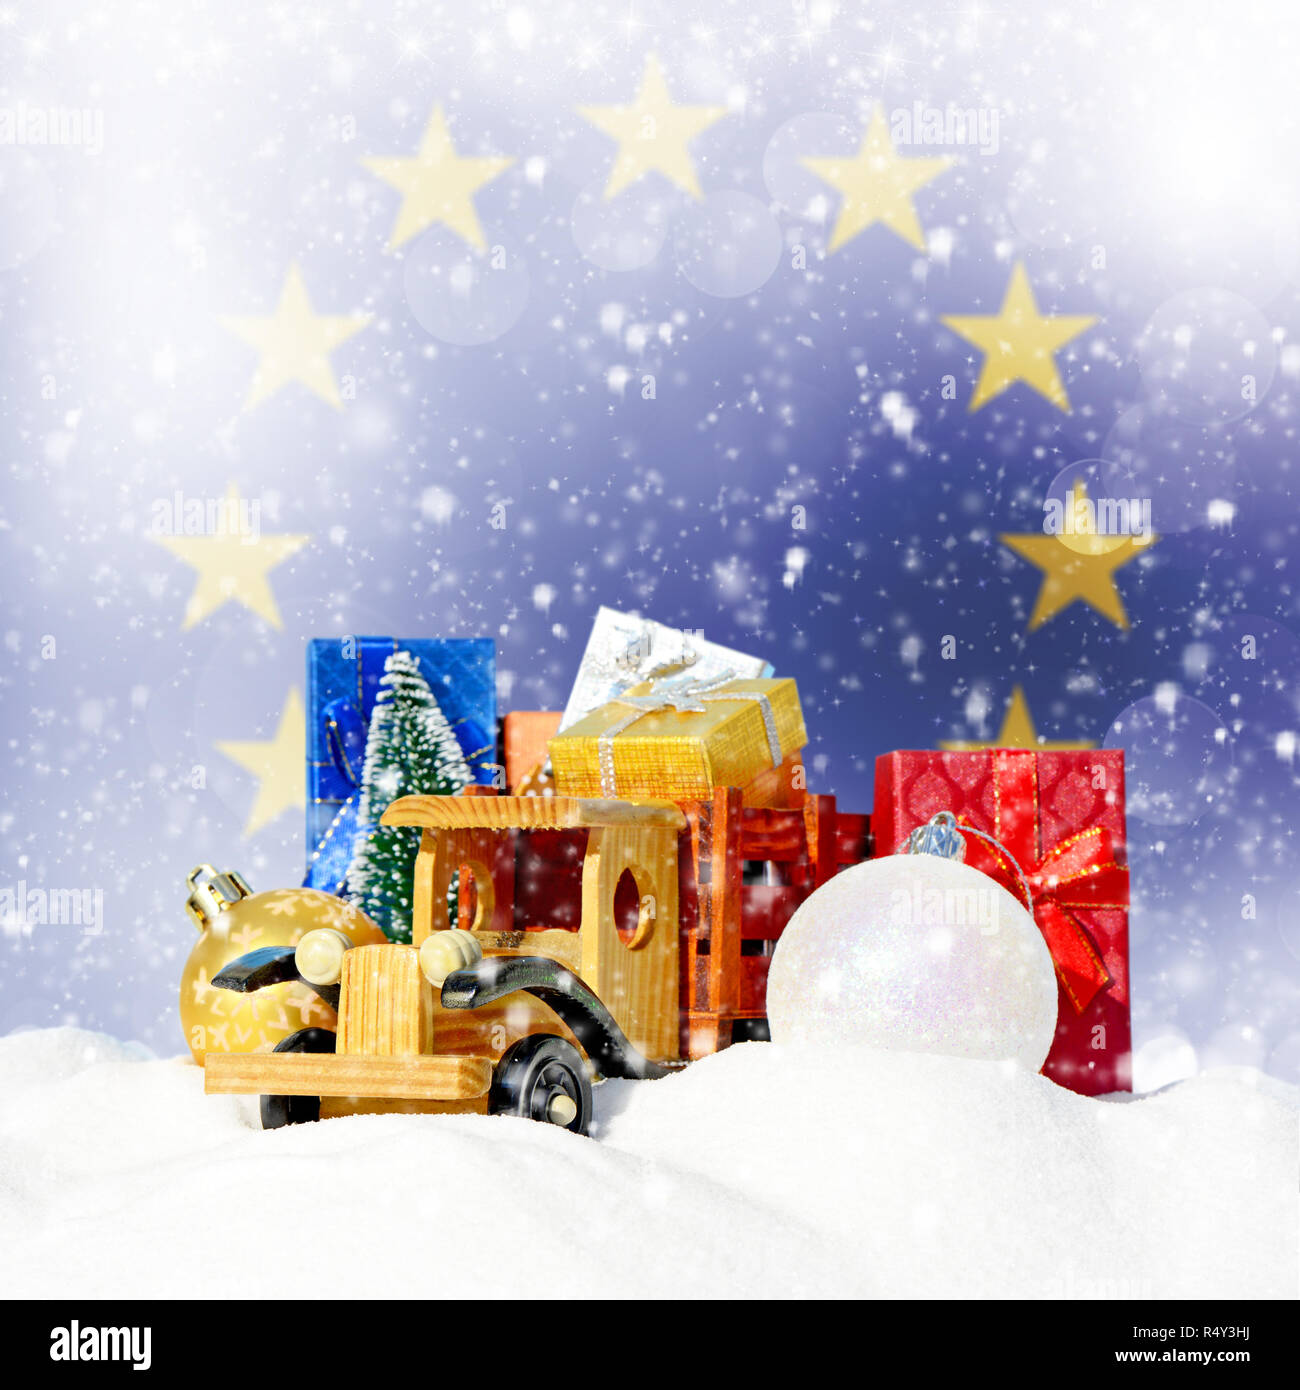 Weihnachten Hintergrund. Spielzeug-LKW mit Geschenken, Neues Jahr Tanne, Kugeln im Schneetreiben und die Fahne der Europäischen Union Stockfoto